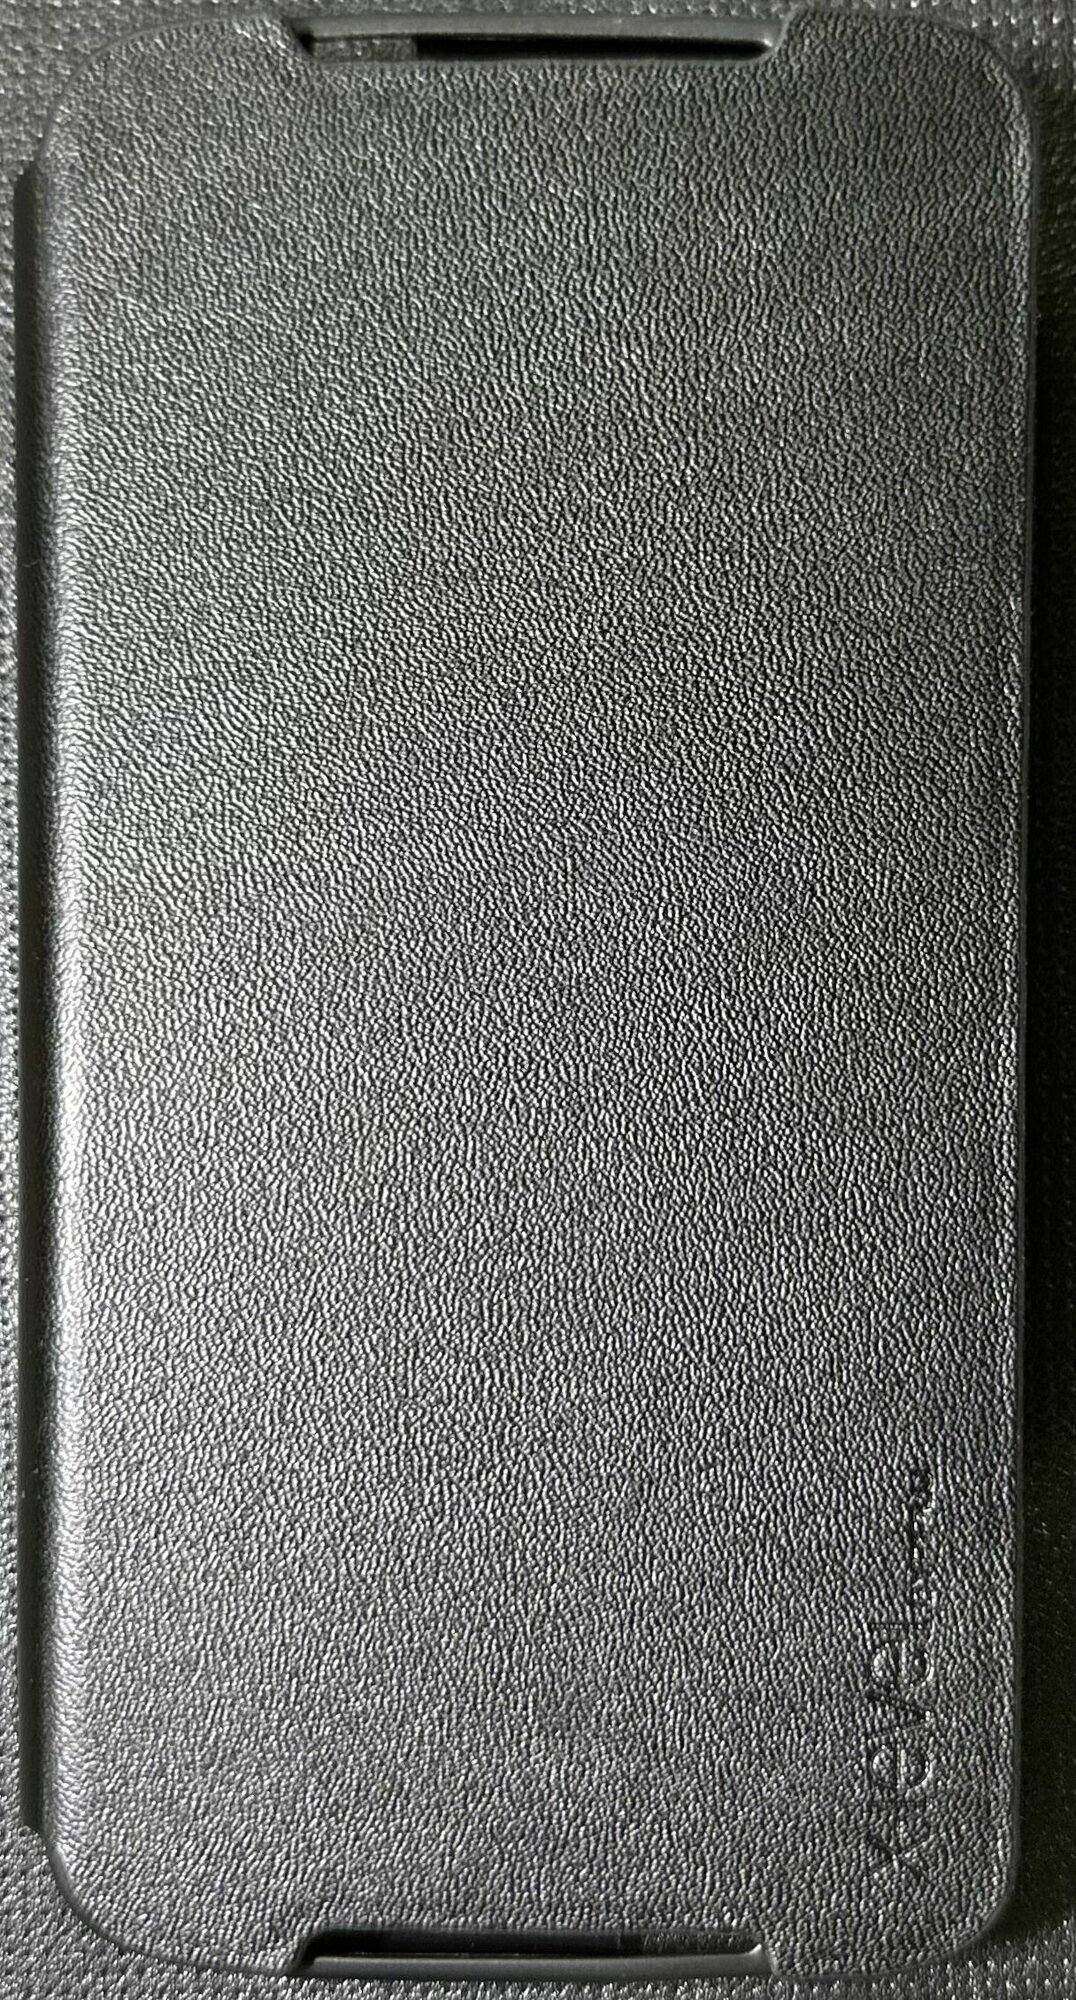 Чехол-книжка для HTC Desire 526G X-LEVEL бизнес серии FIBCOLOR черный